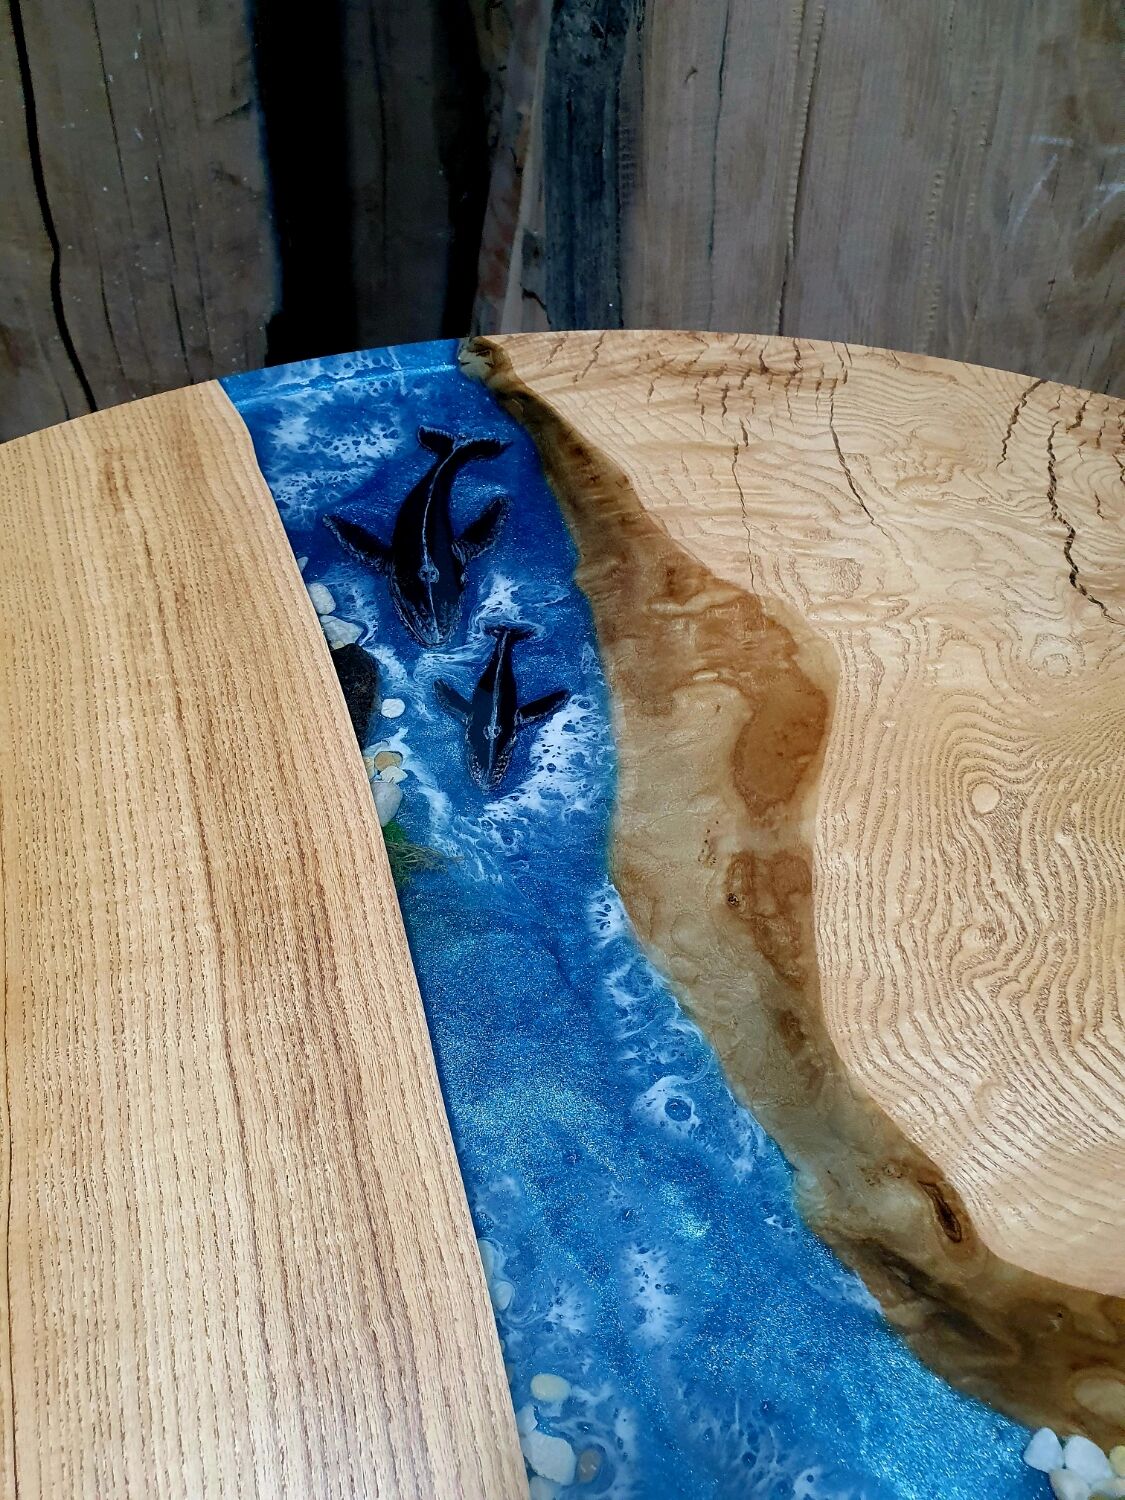 Деревянные столы с эпоксидной смолой в интерьере